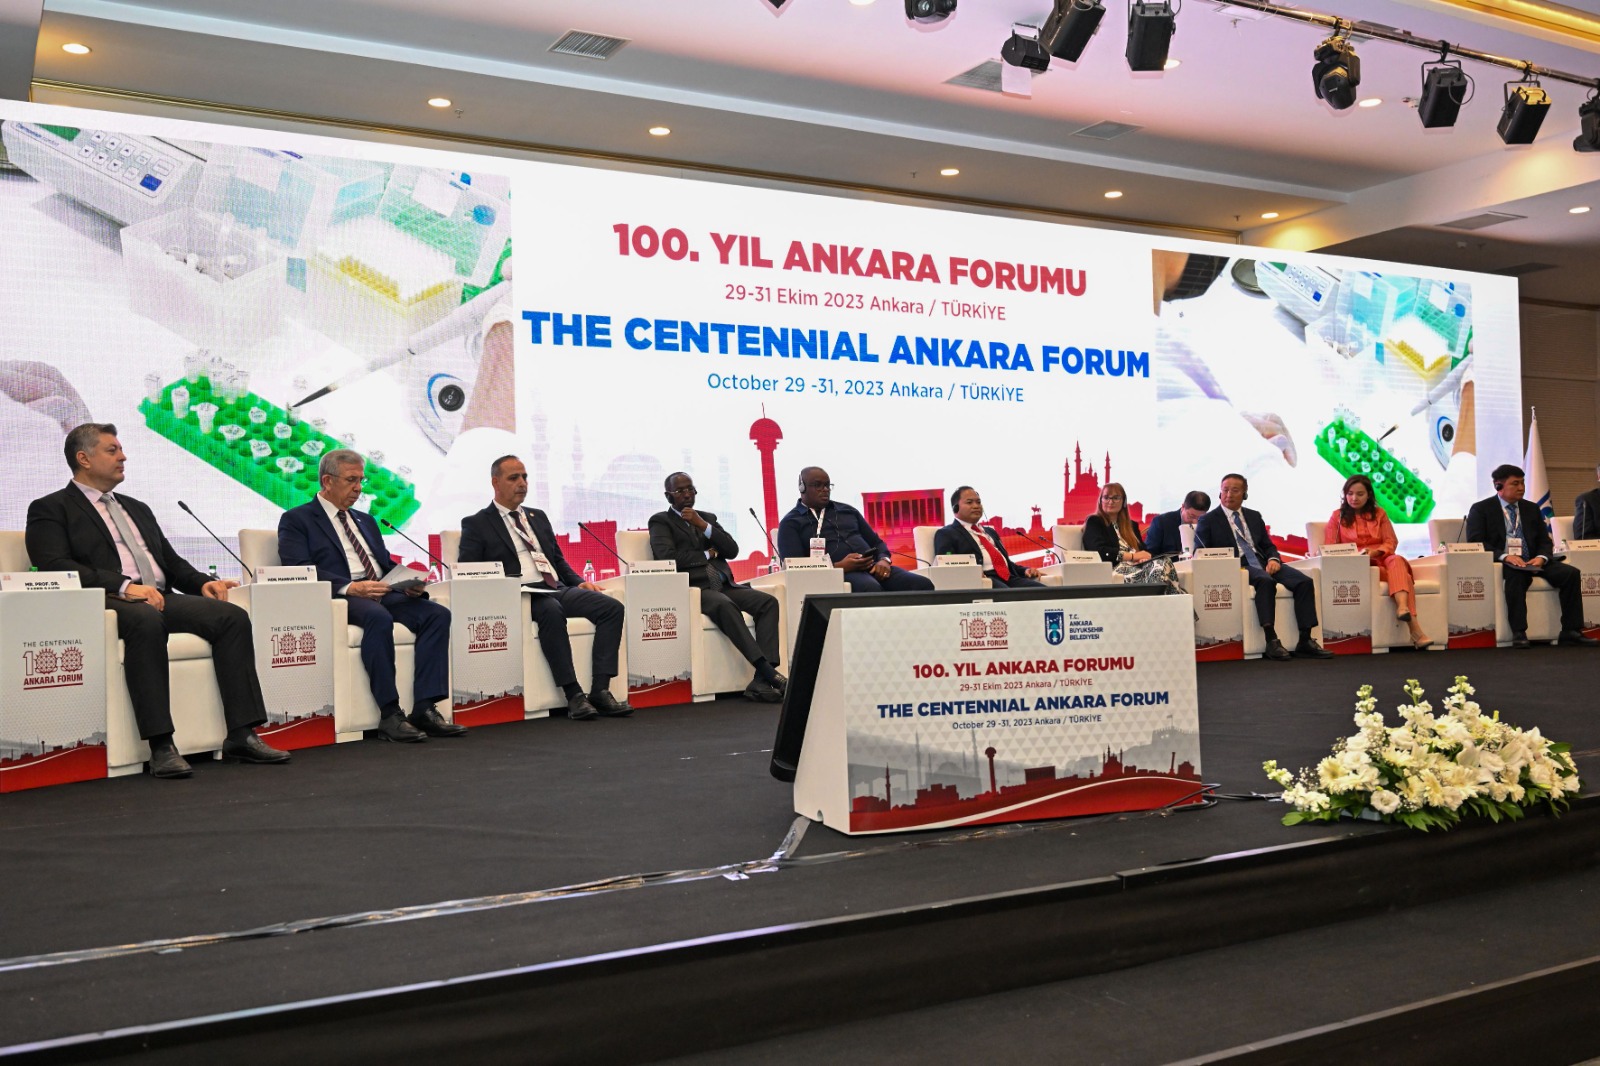 Başkan Harmancı 100. Yıl Ankara Şehircilik Forumu’nda vurguladı: “Başkentlere özel statü şart'